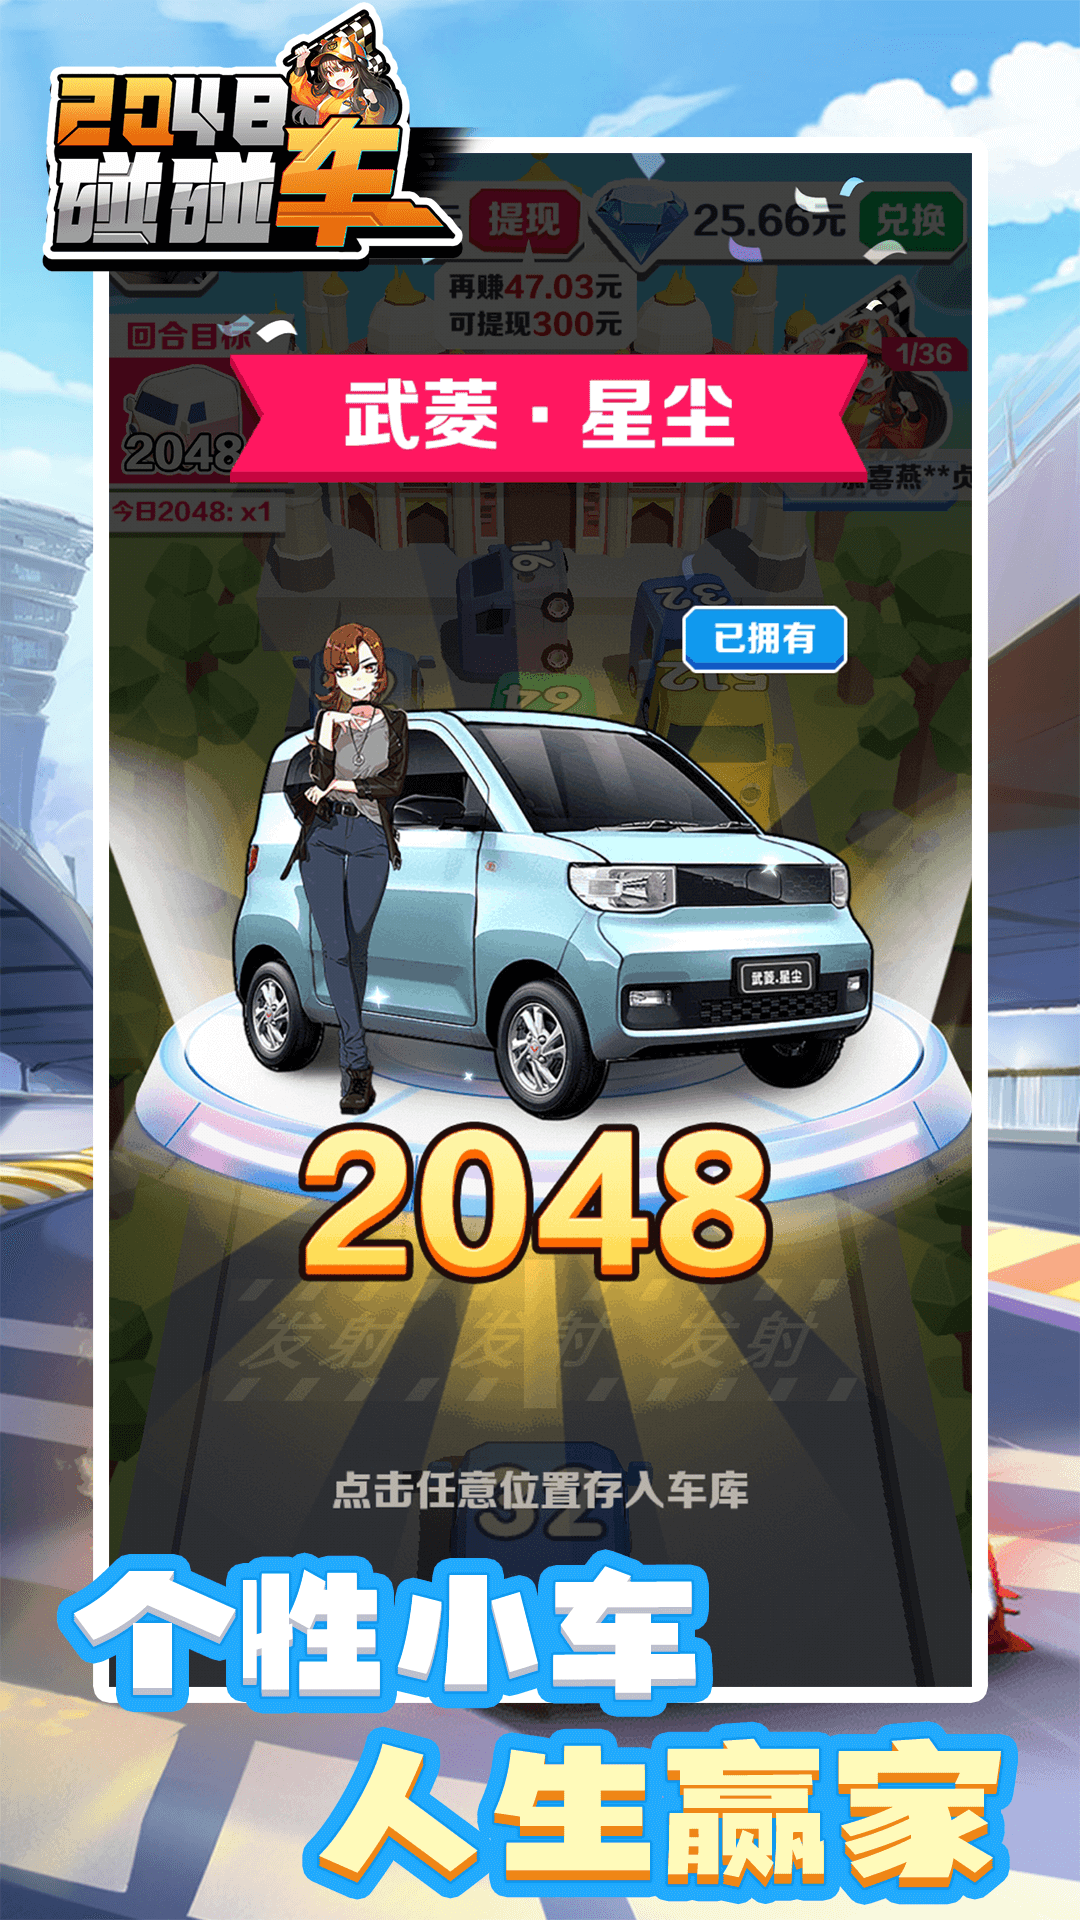 2048碰碰车 红包版手游app截图